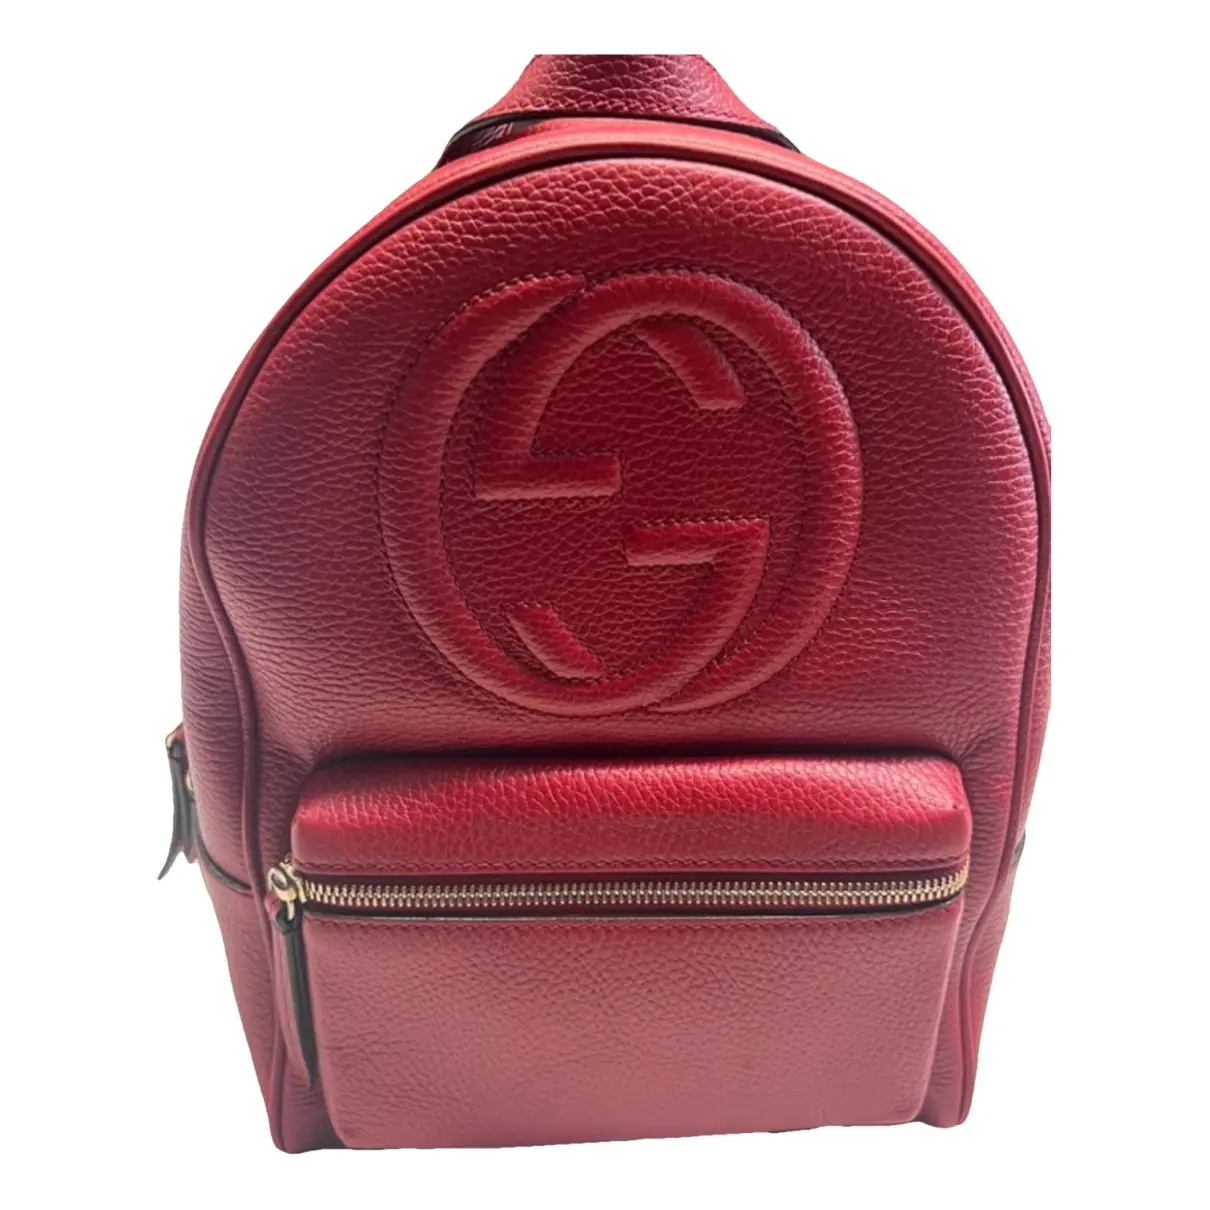 Soho leather backpack